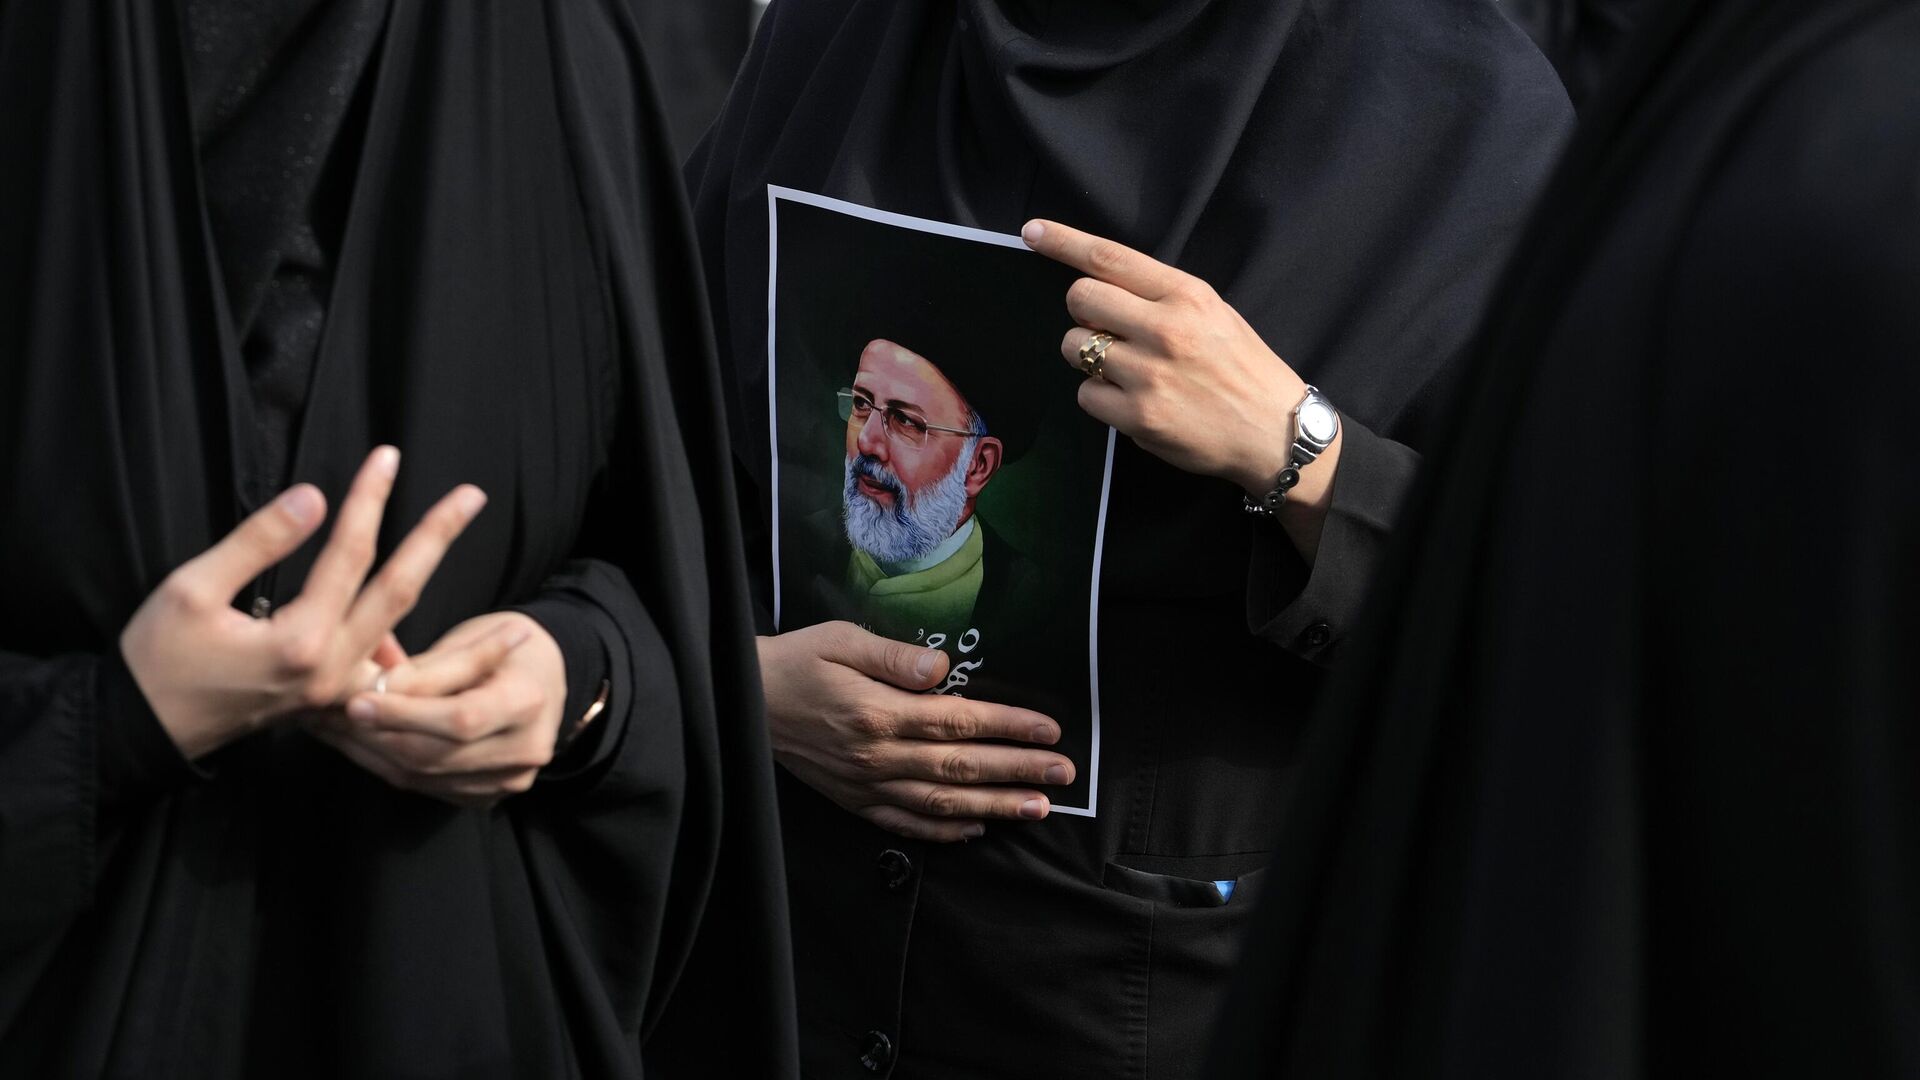 В Иране прощаются с погибшим президентом, тело возят по разным городам. Иранист: «Это пропаганда, чтобы создать видимость единства народа»